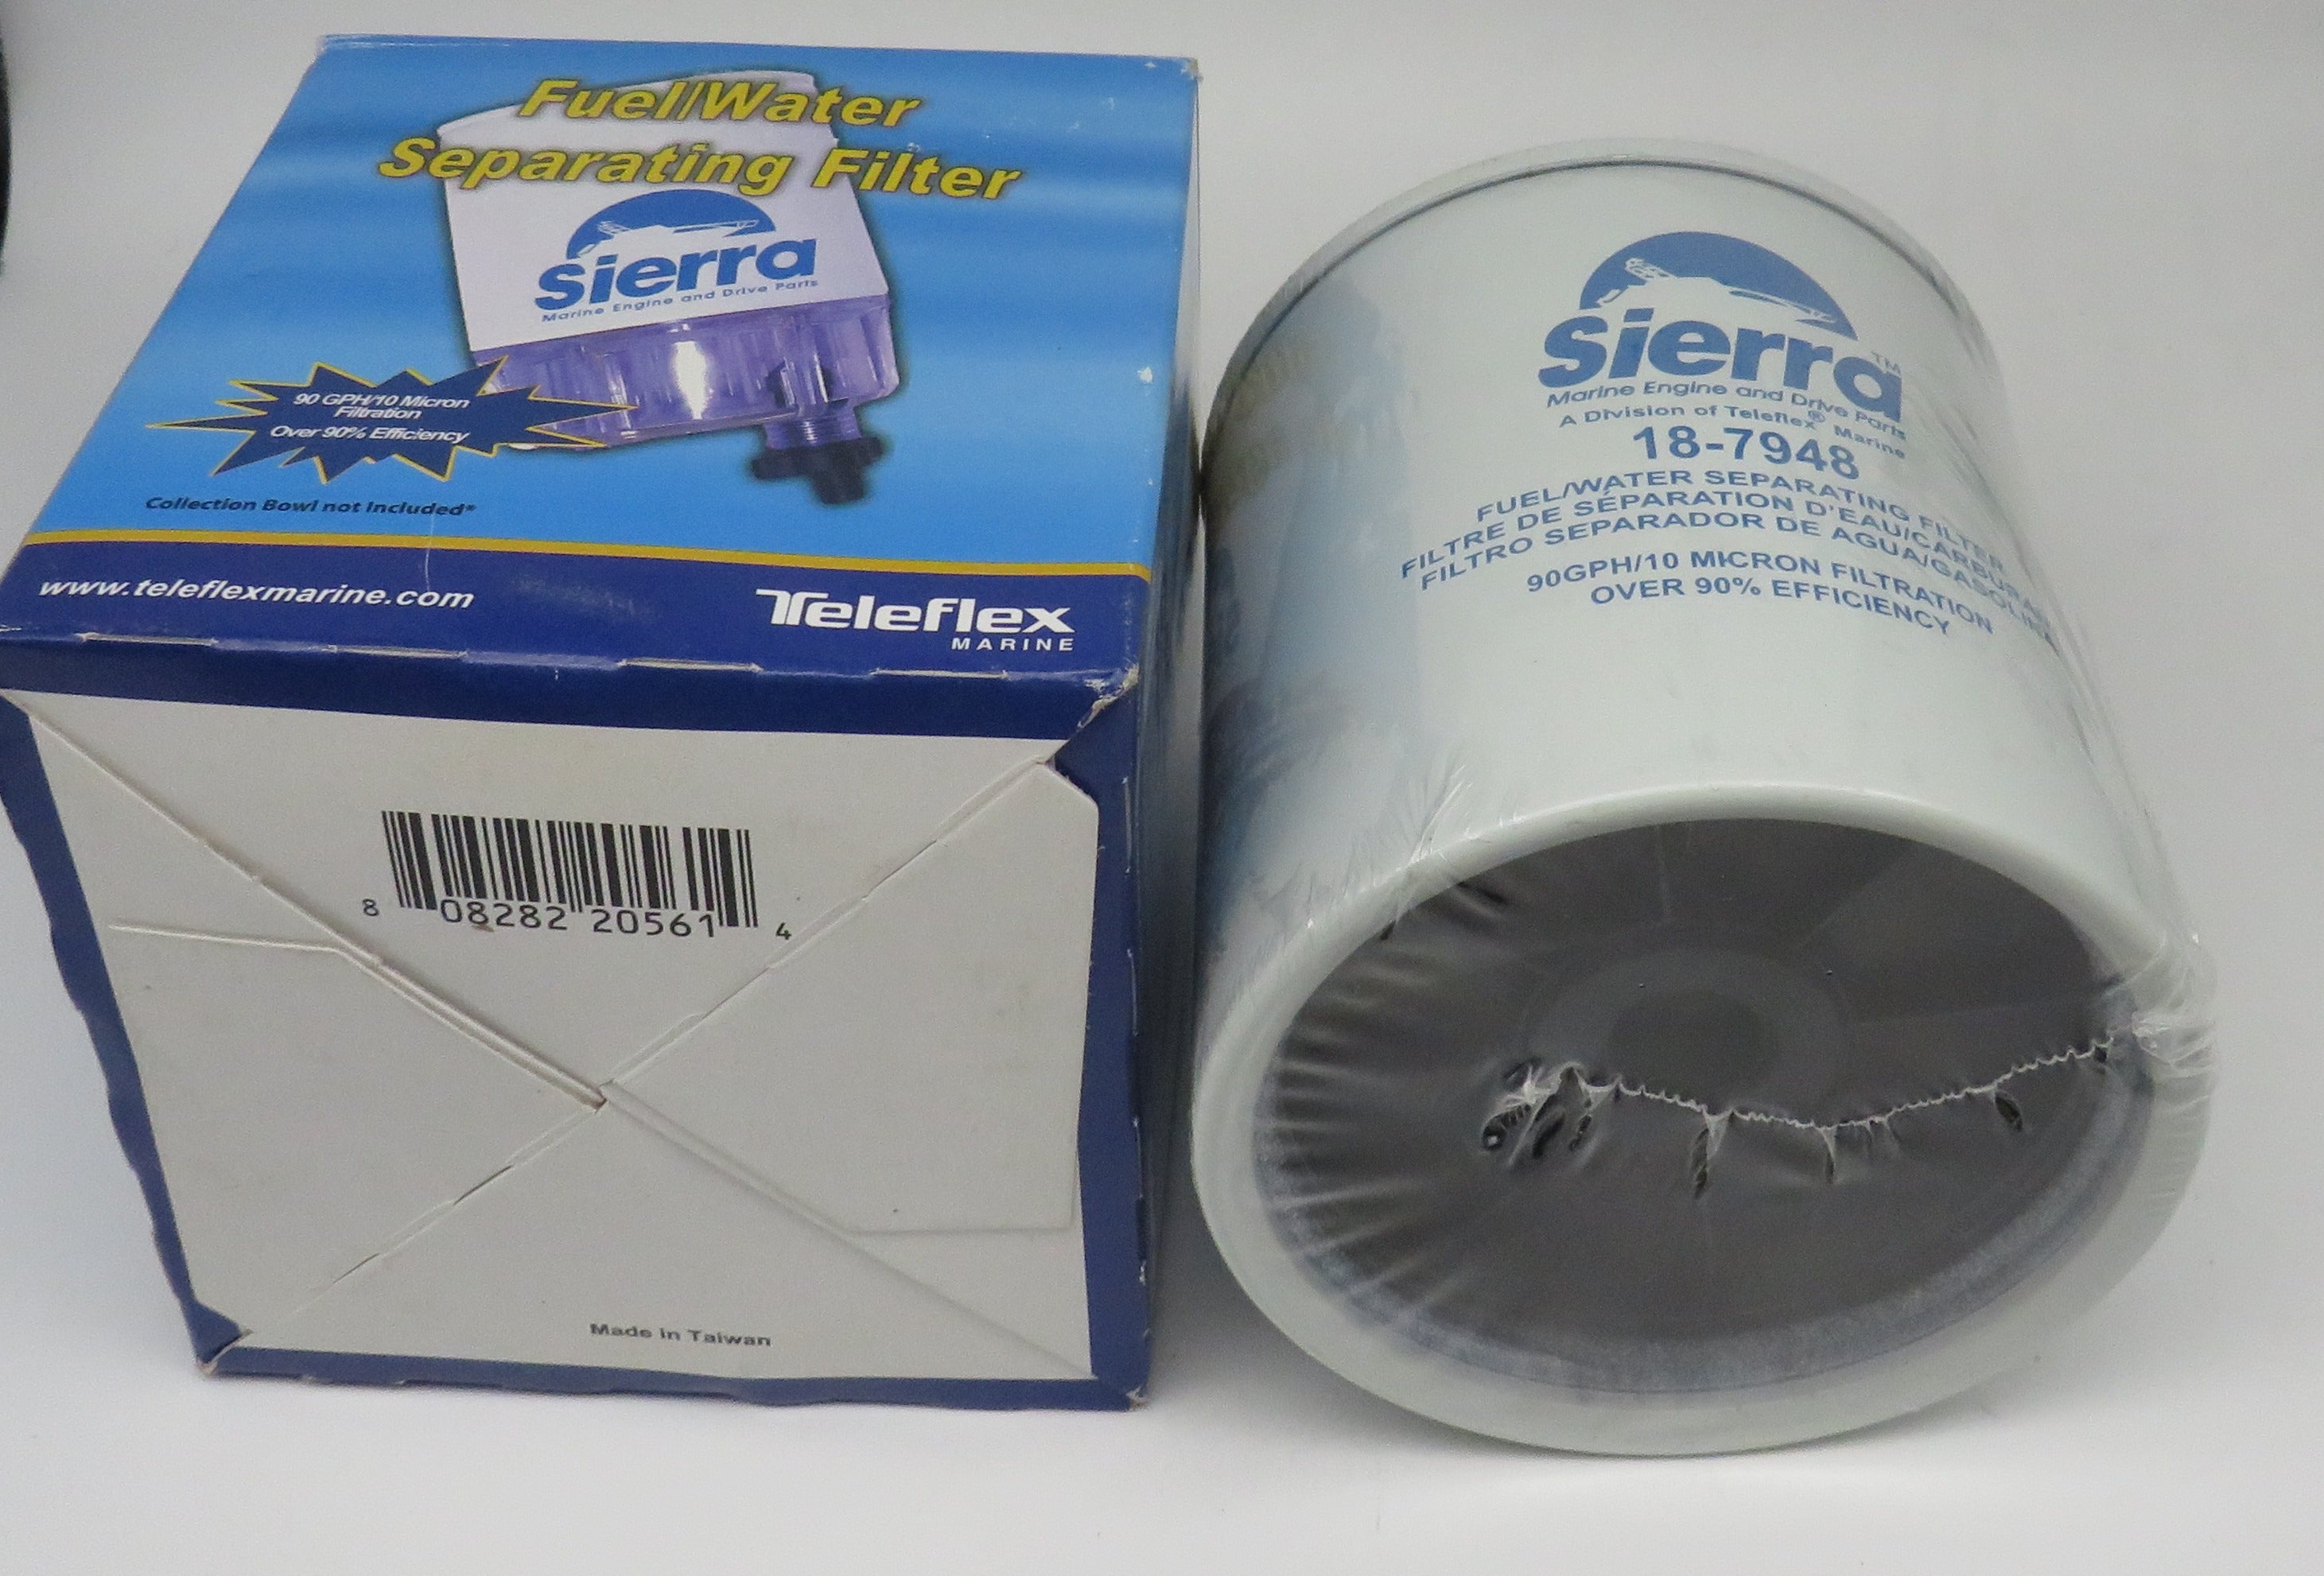 18-7948 Sierra Fuel Water Separating Filter